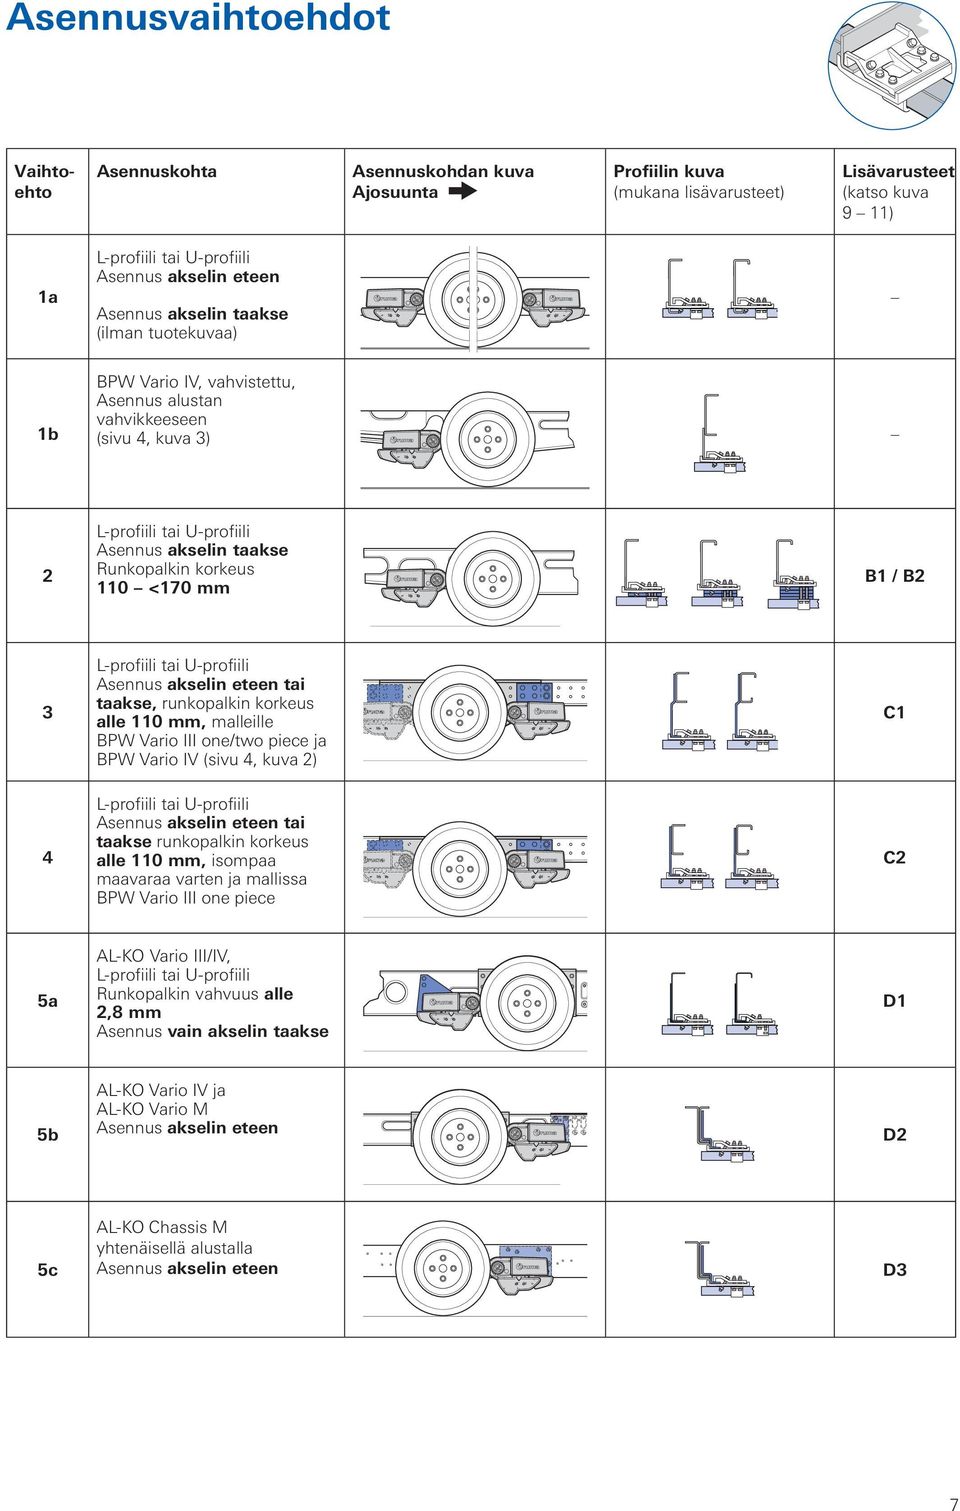 korkeus alle 110 mm, malleille BPW Vario III one/two piece ja BPW Vario IV (sivu 4, kuva 2) C1 4 tai taakse runkopalkin korkeus alle 110 mm, isompaa maavaraa varten ja mallissa BPW